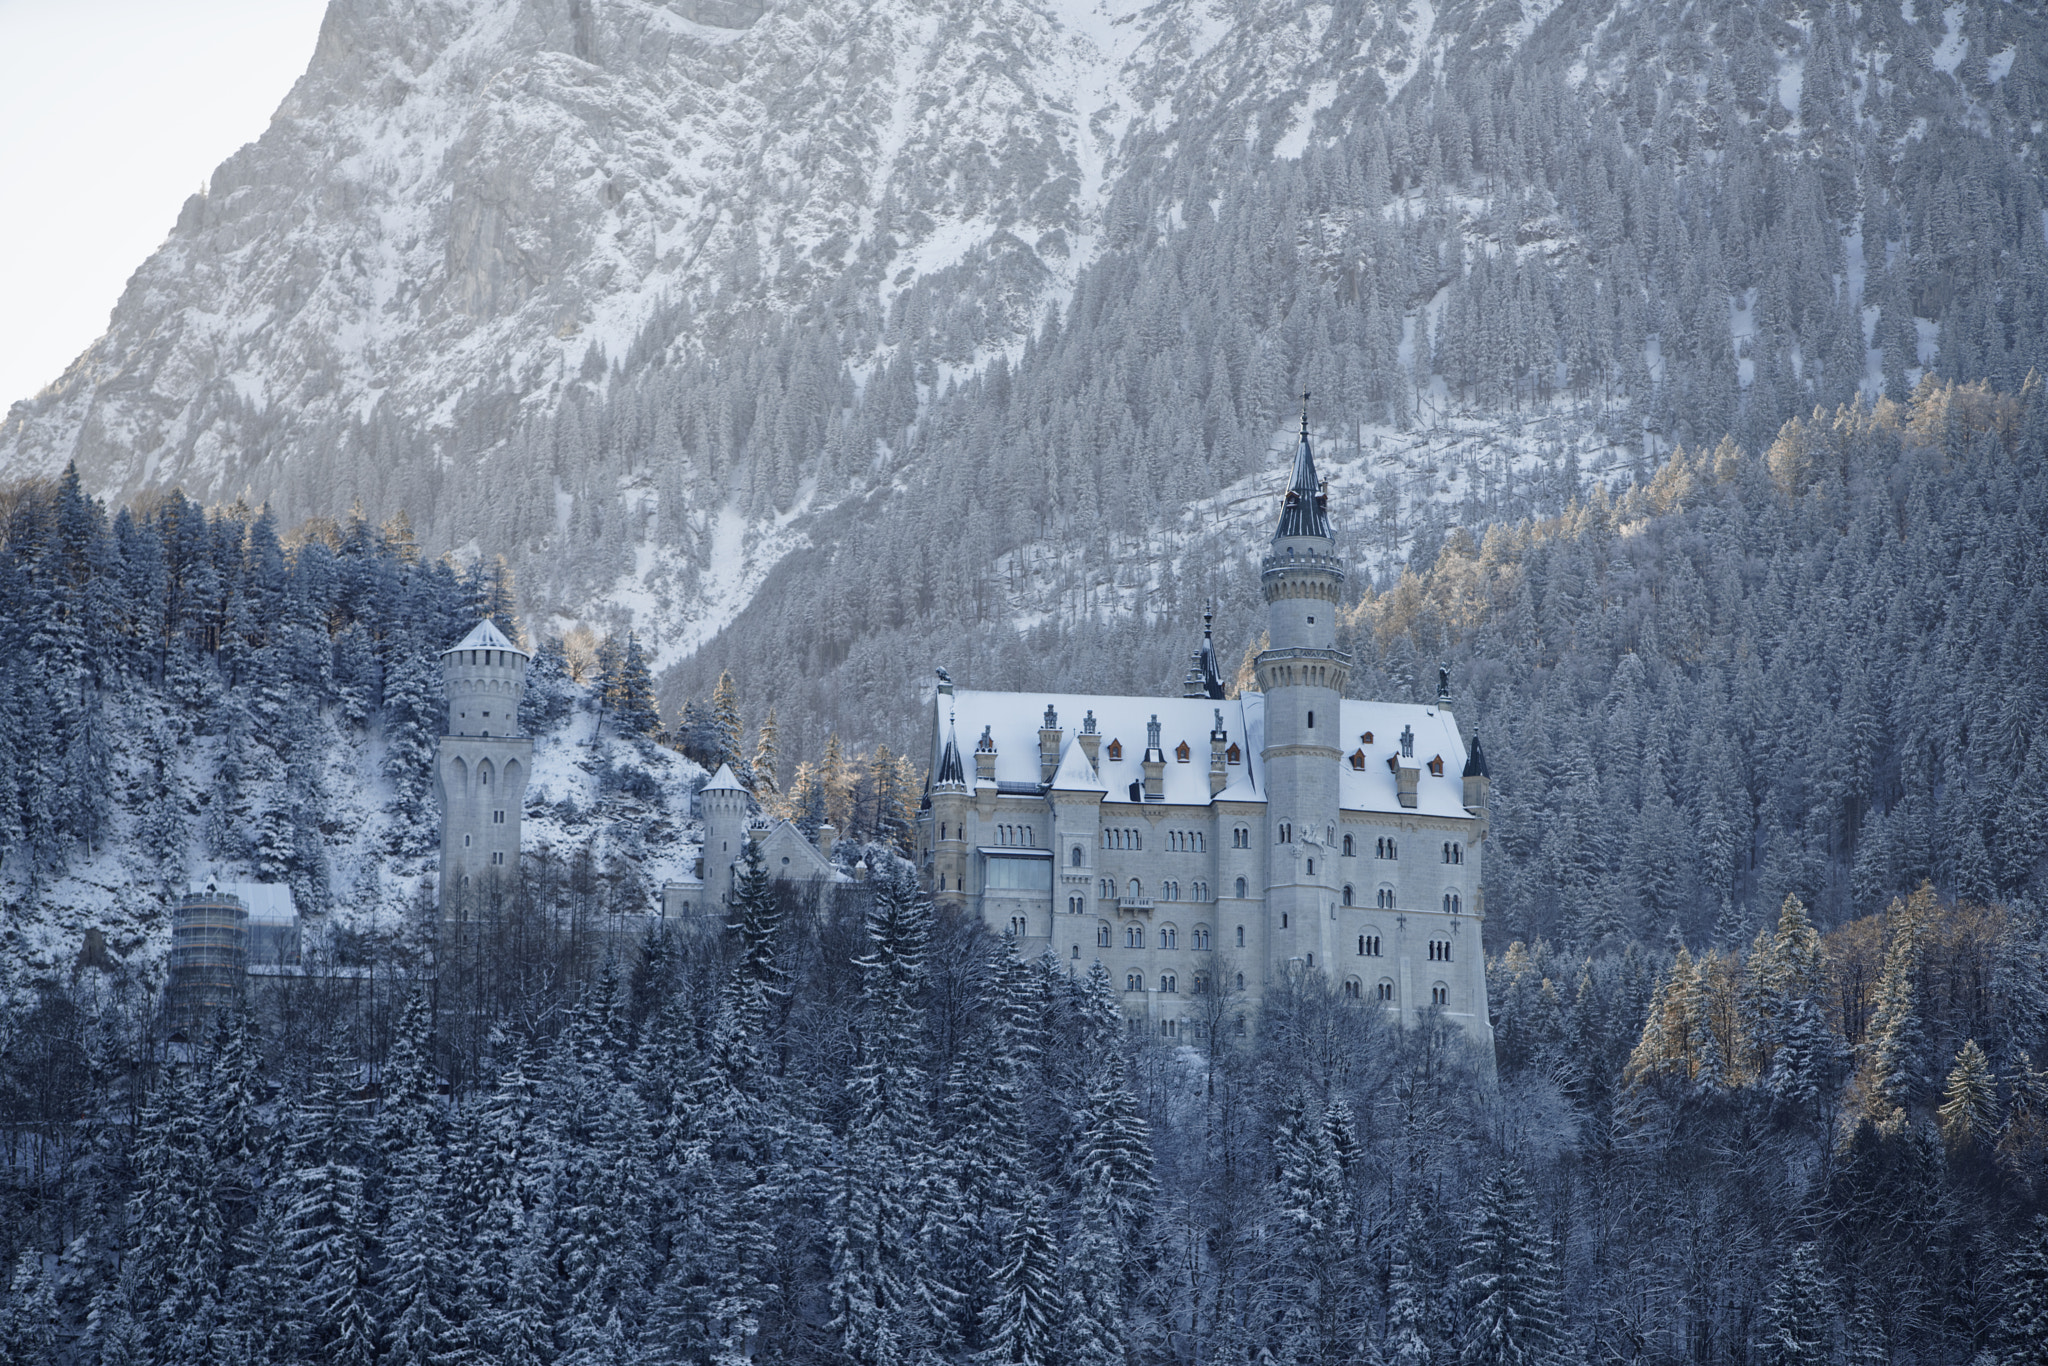 Sony a7R II sample photo. Neuschwanstein castle photography